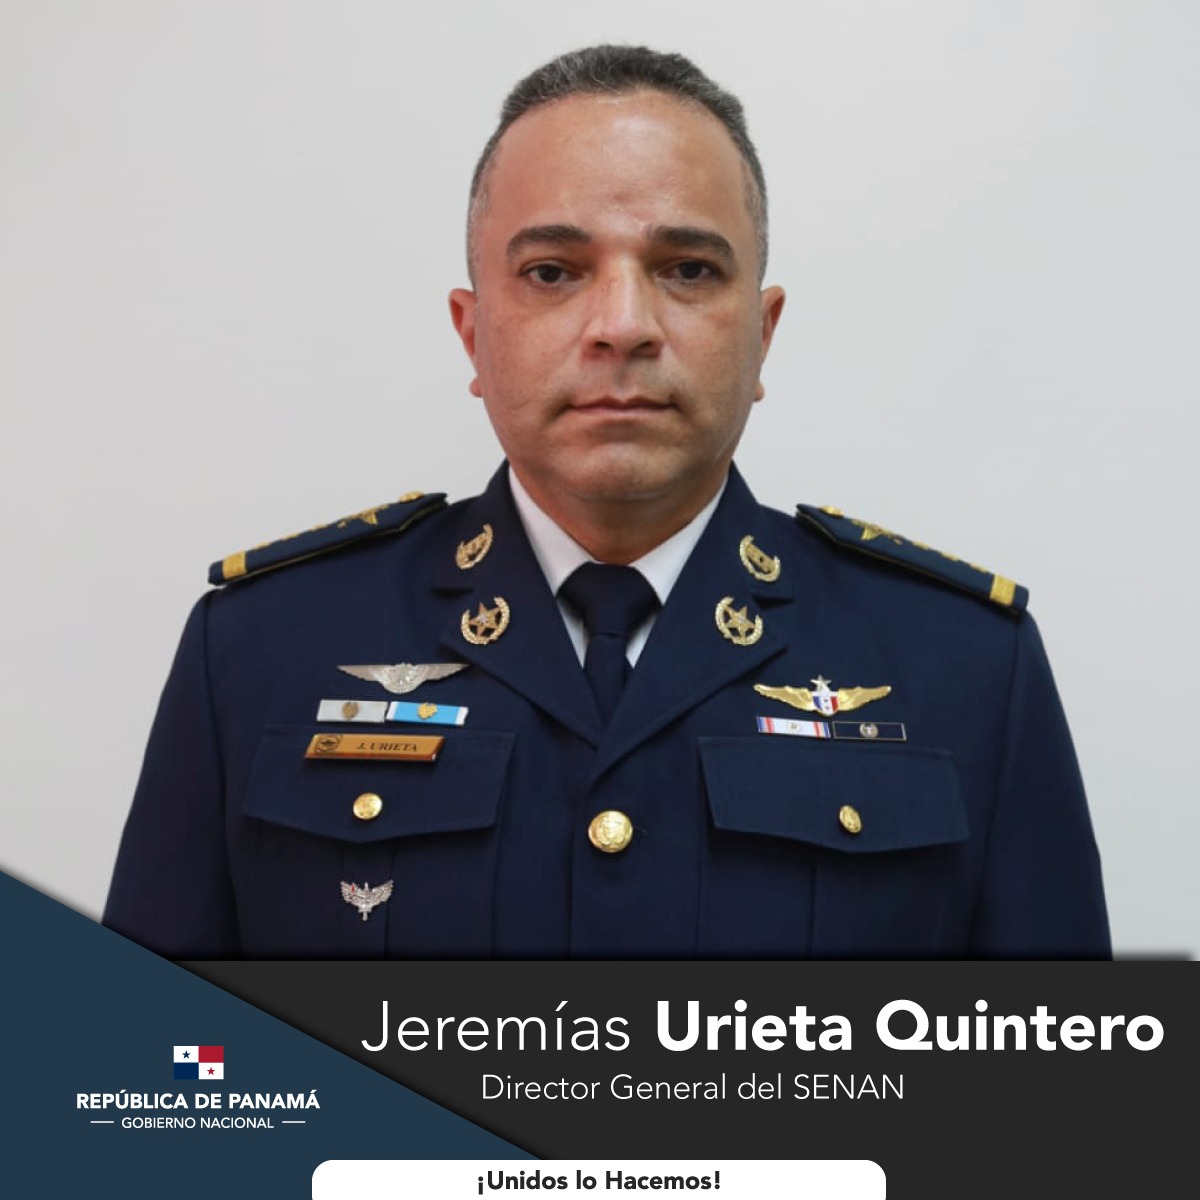 Jeremías Urieta Quintero, Director General del SENAN